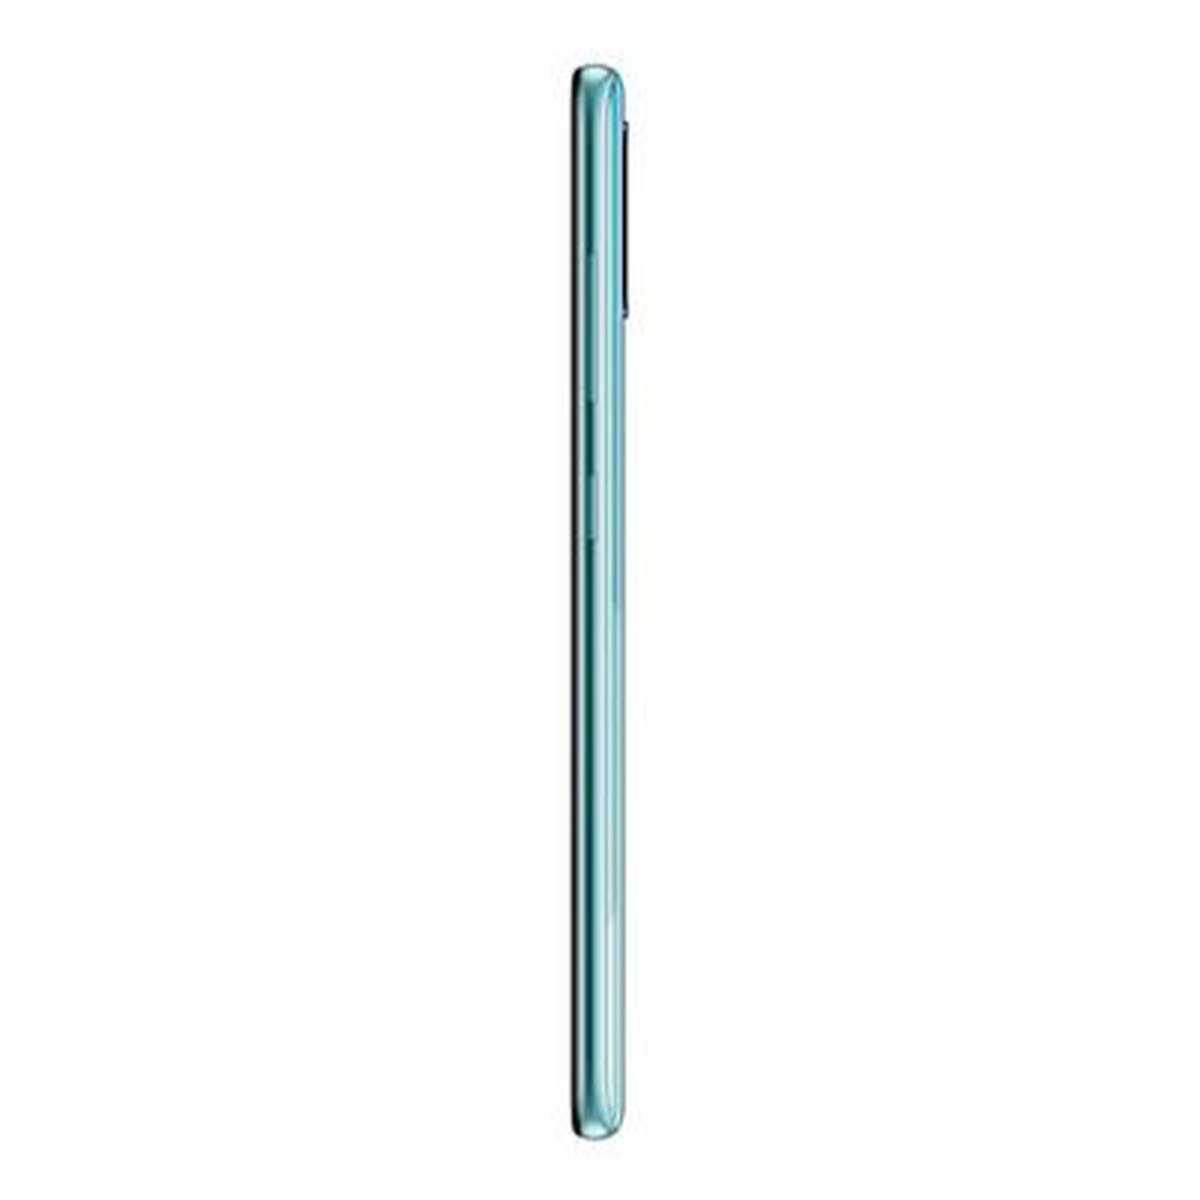 Samsung Galaxy A51 SMA515 128GB Blue